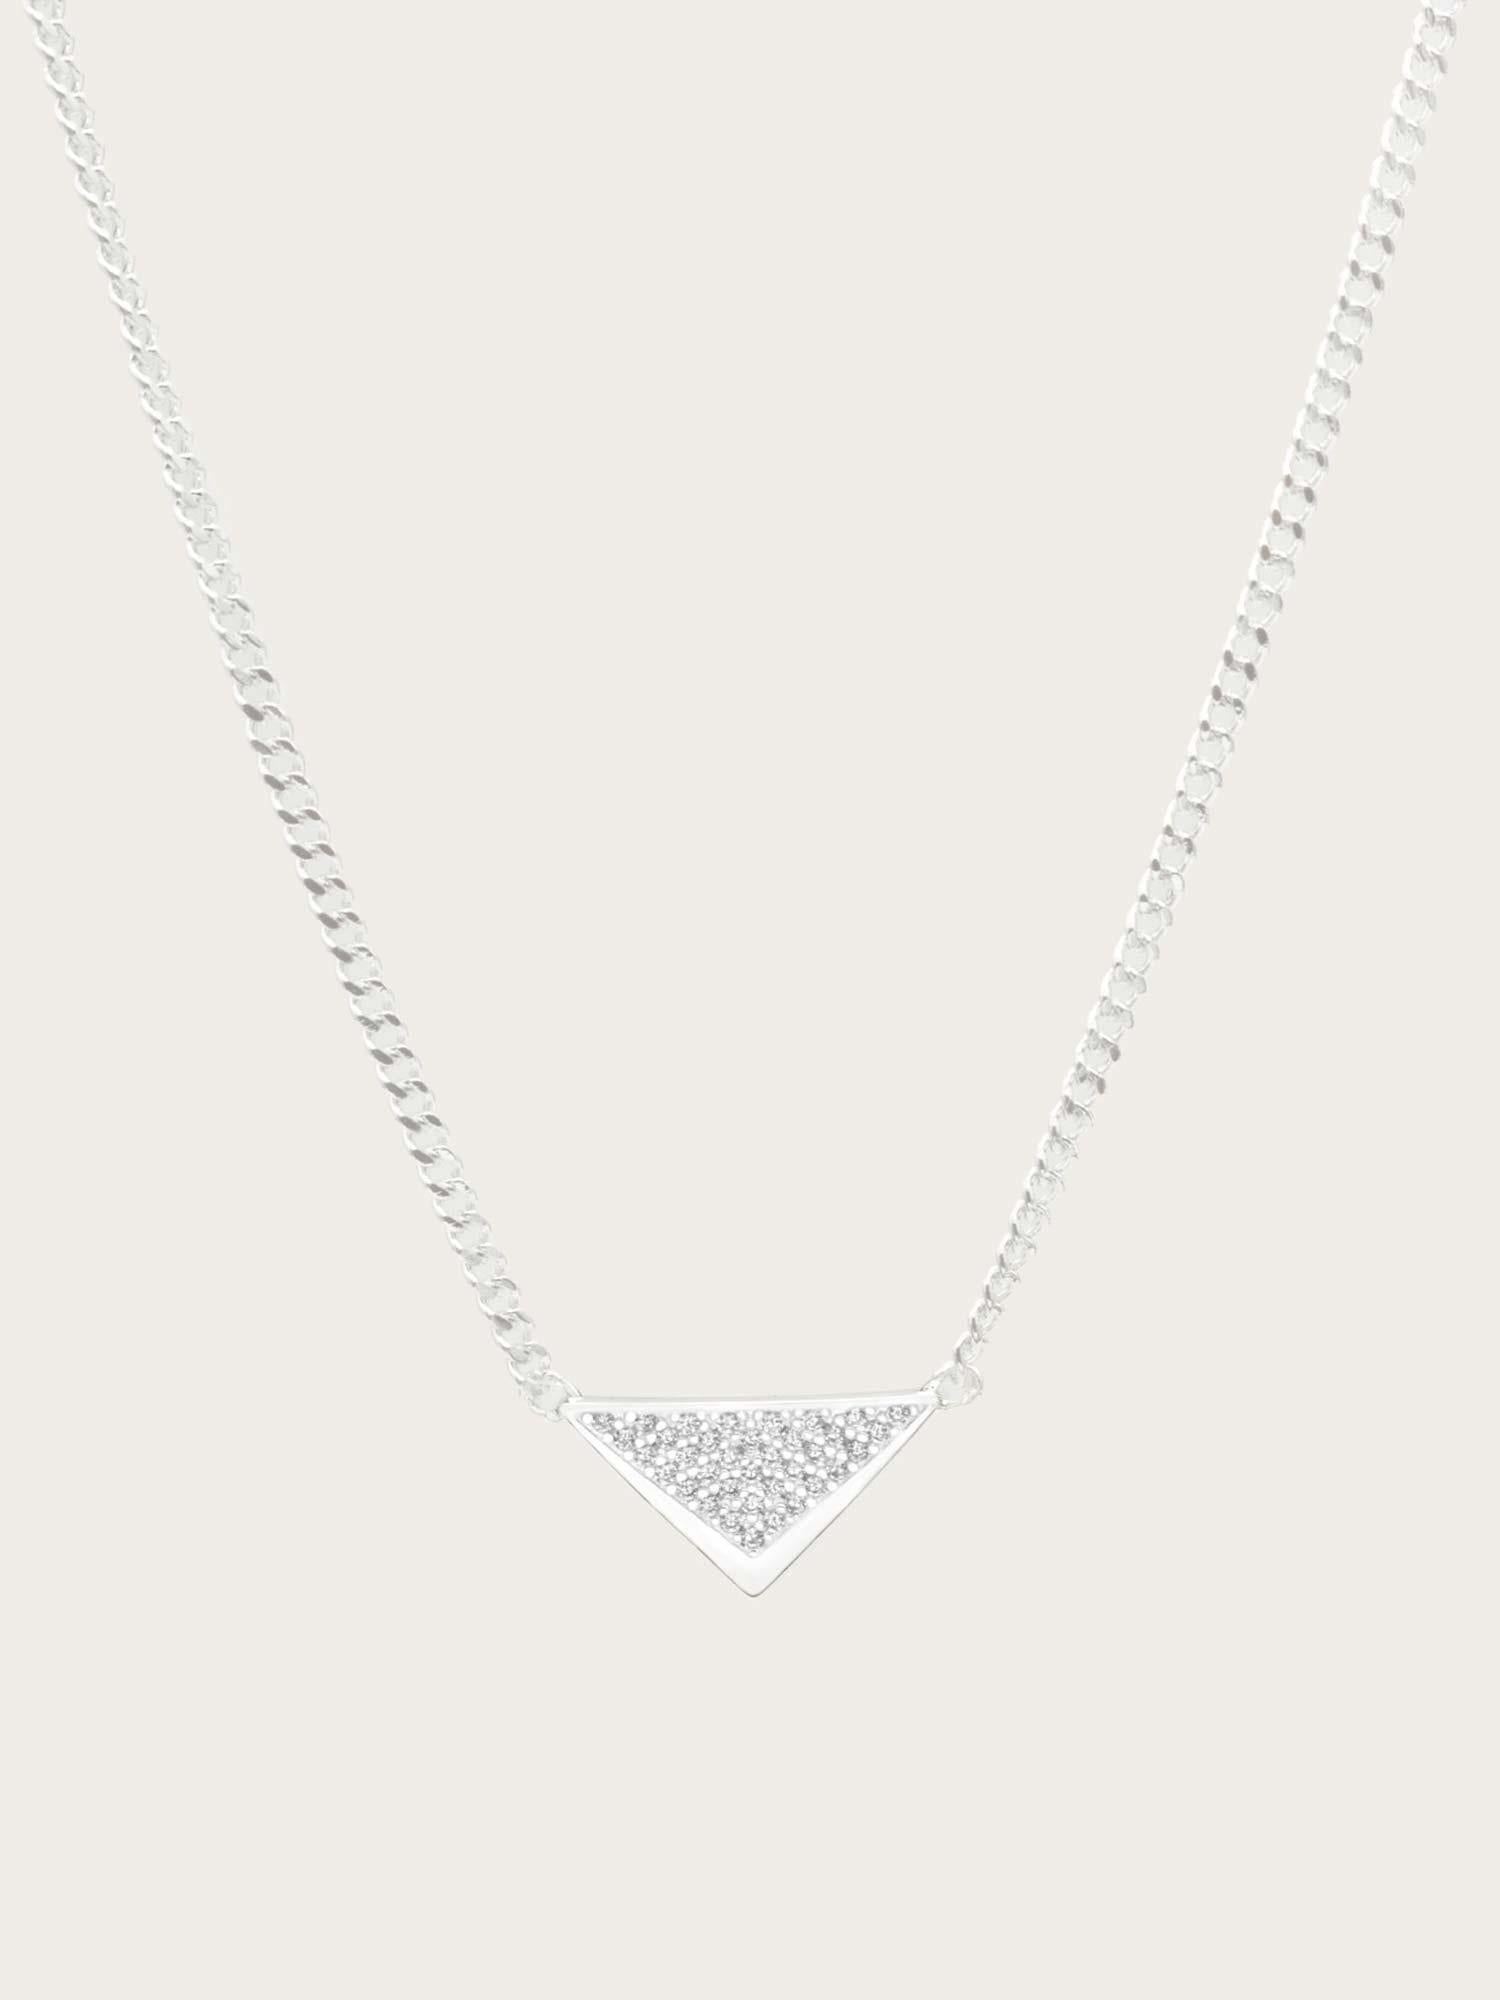 Martini Necklace - Silver